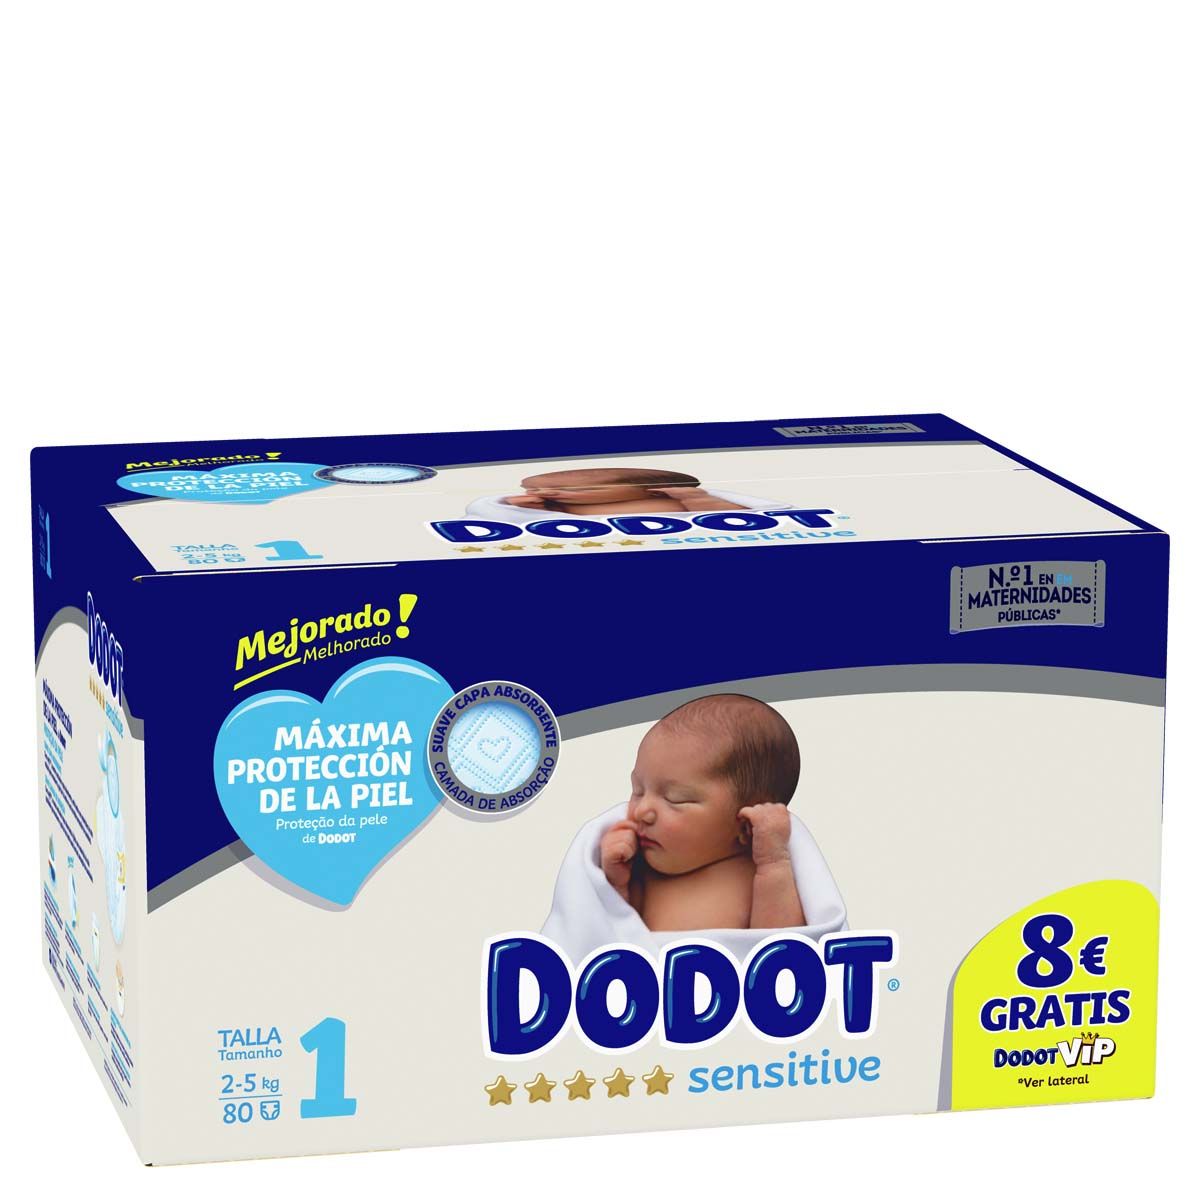 Pañales DODOT Sensitive talla 1 (de 2 a 5 kg) recién nacido caja 112 pañales  - La Farmacia de enfrente